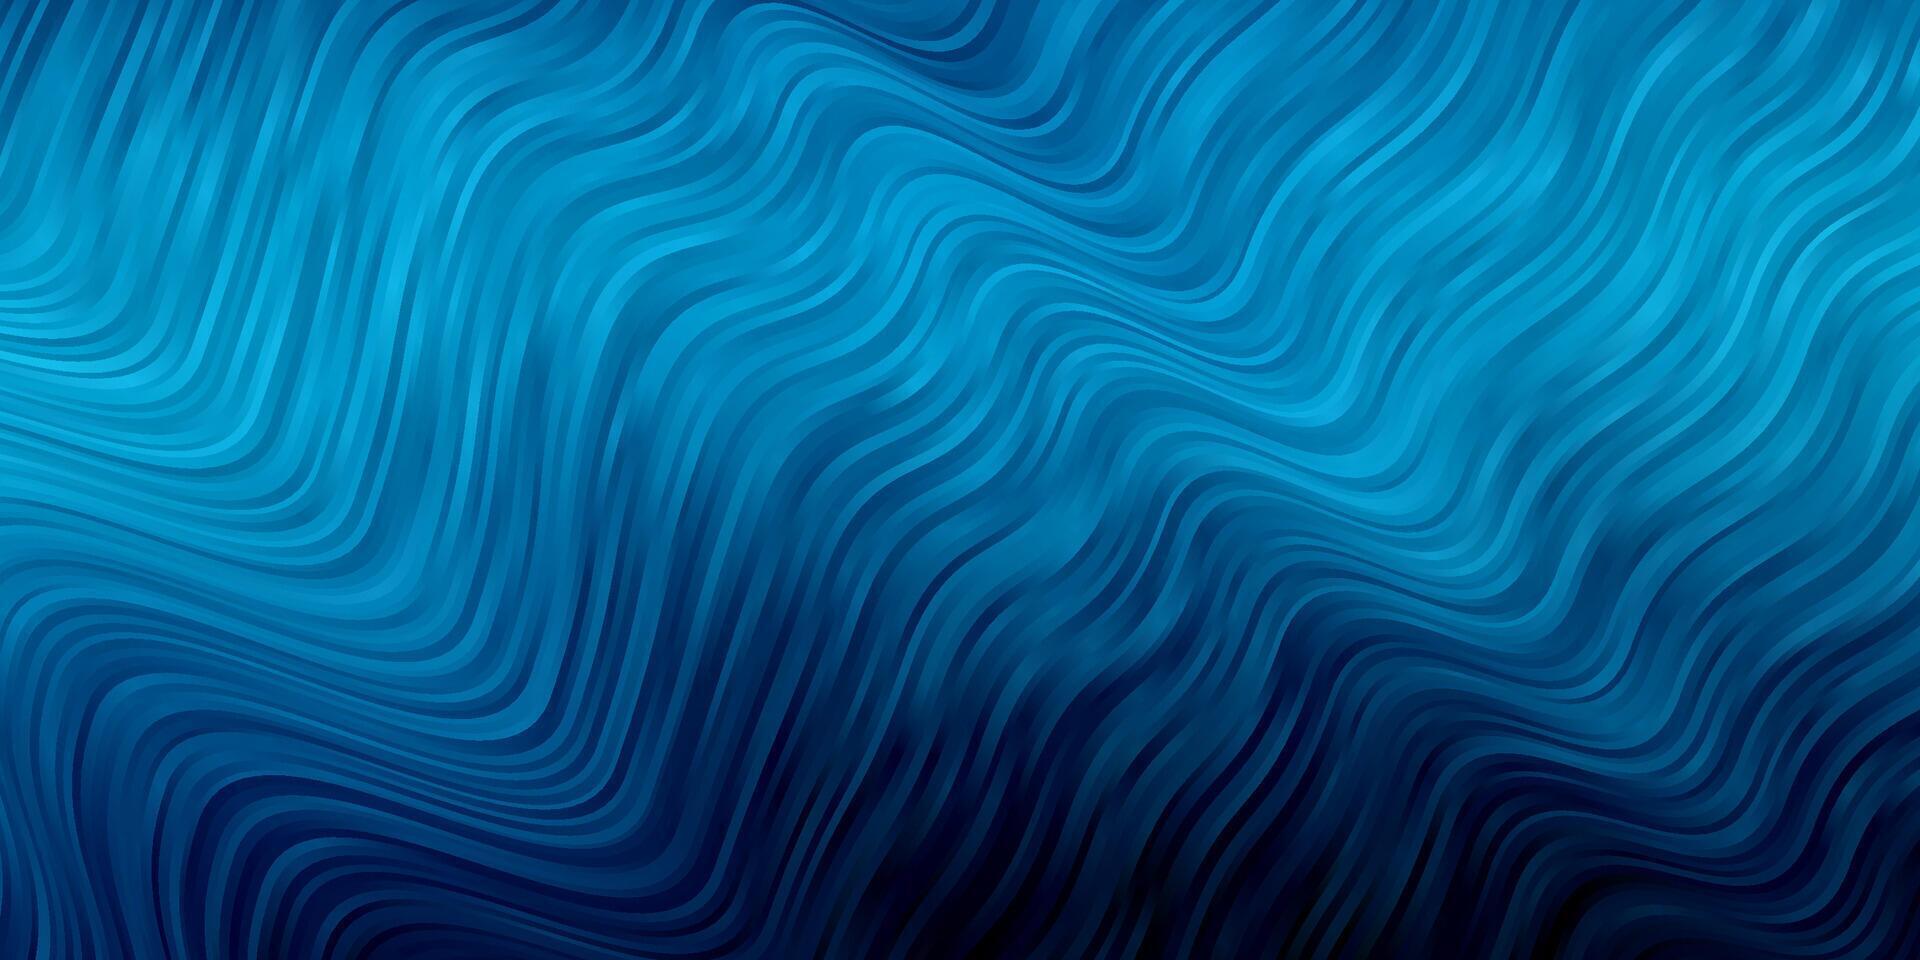 sfondo vettoriale blu scuro con linee piegate.